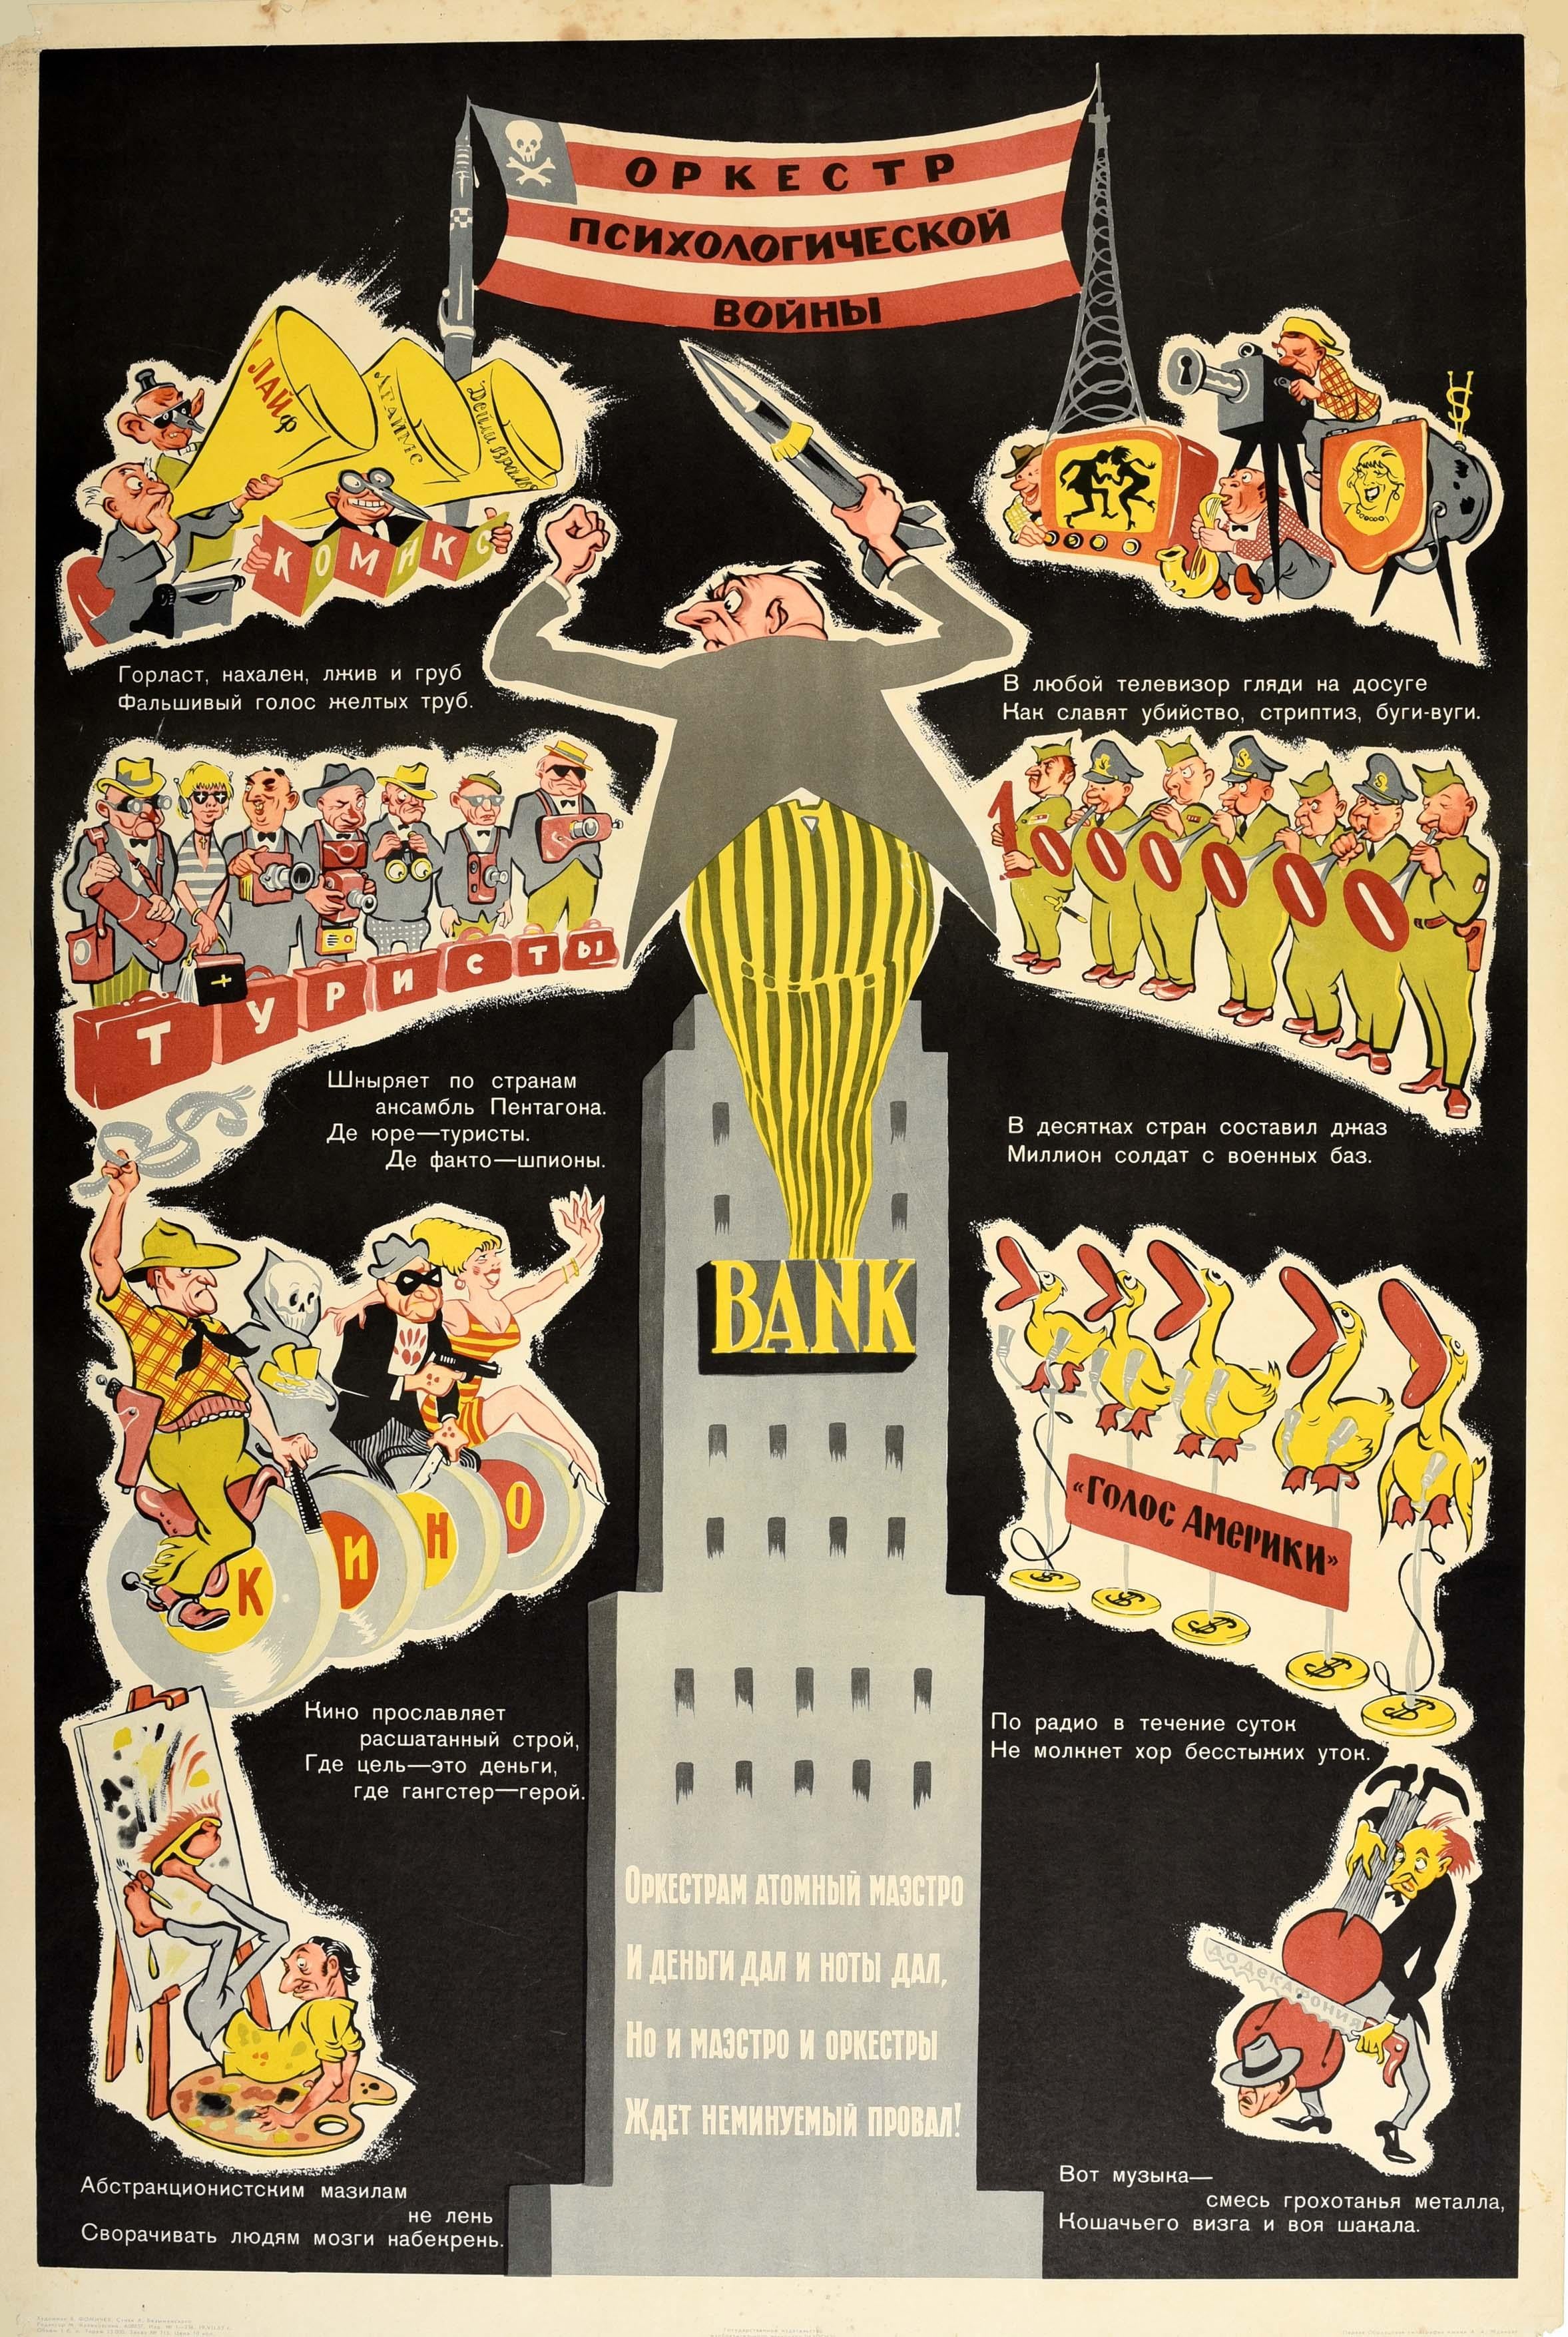 Fomichev Print - Original Vintage USSR Cold War Poster America Psychological War Orchestra Bank